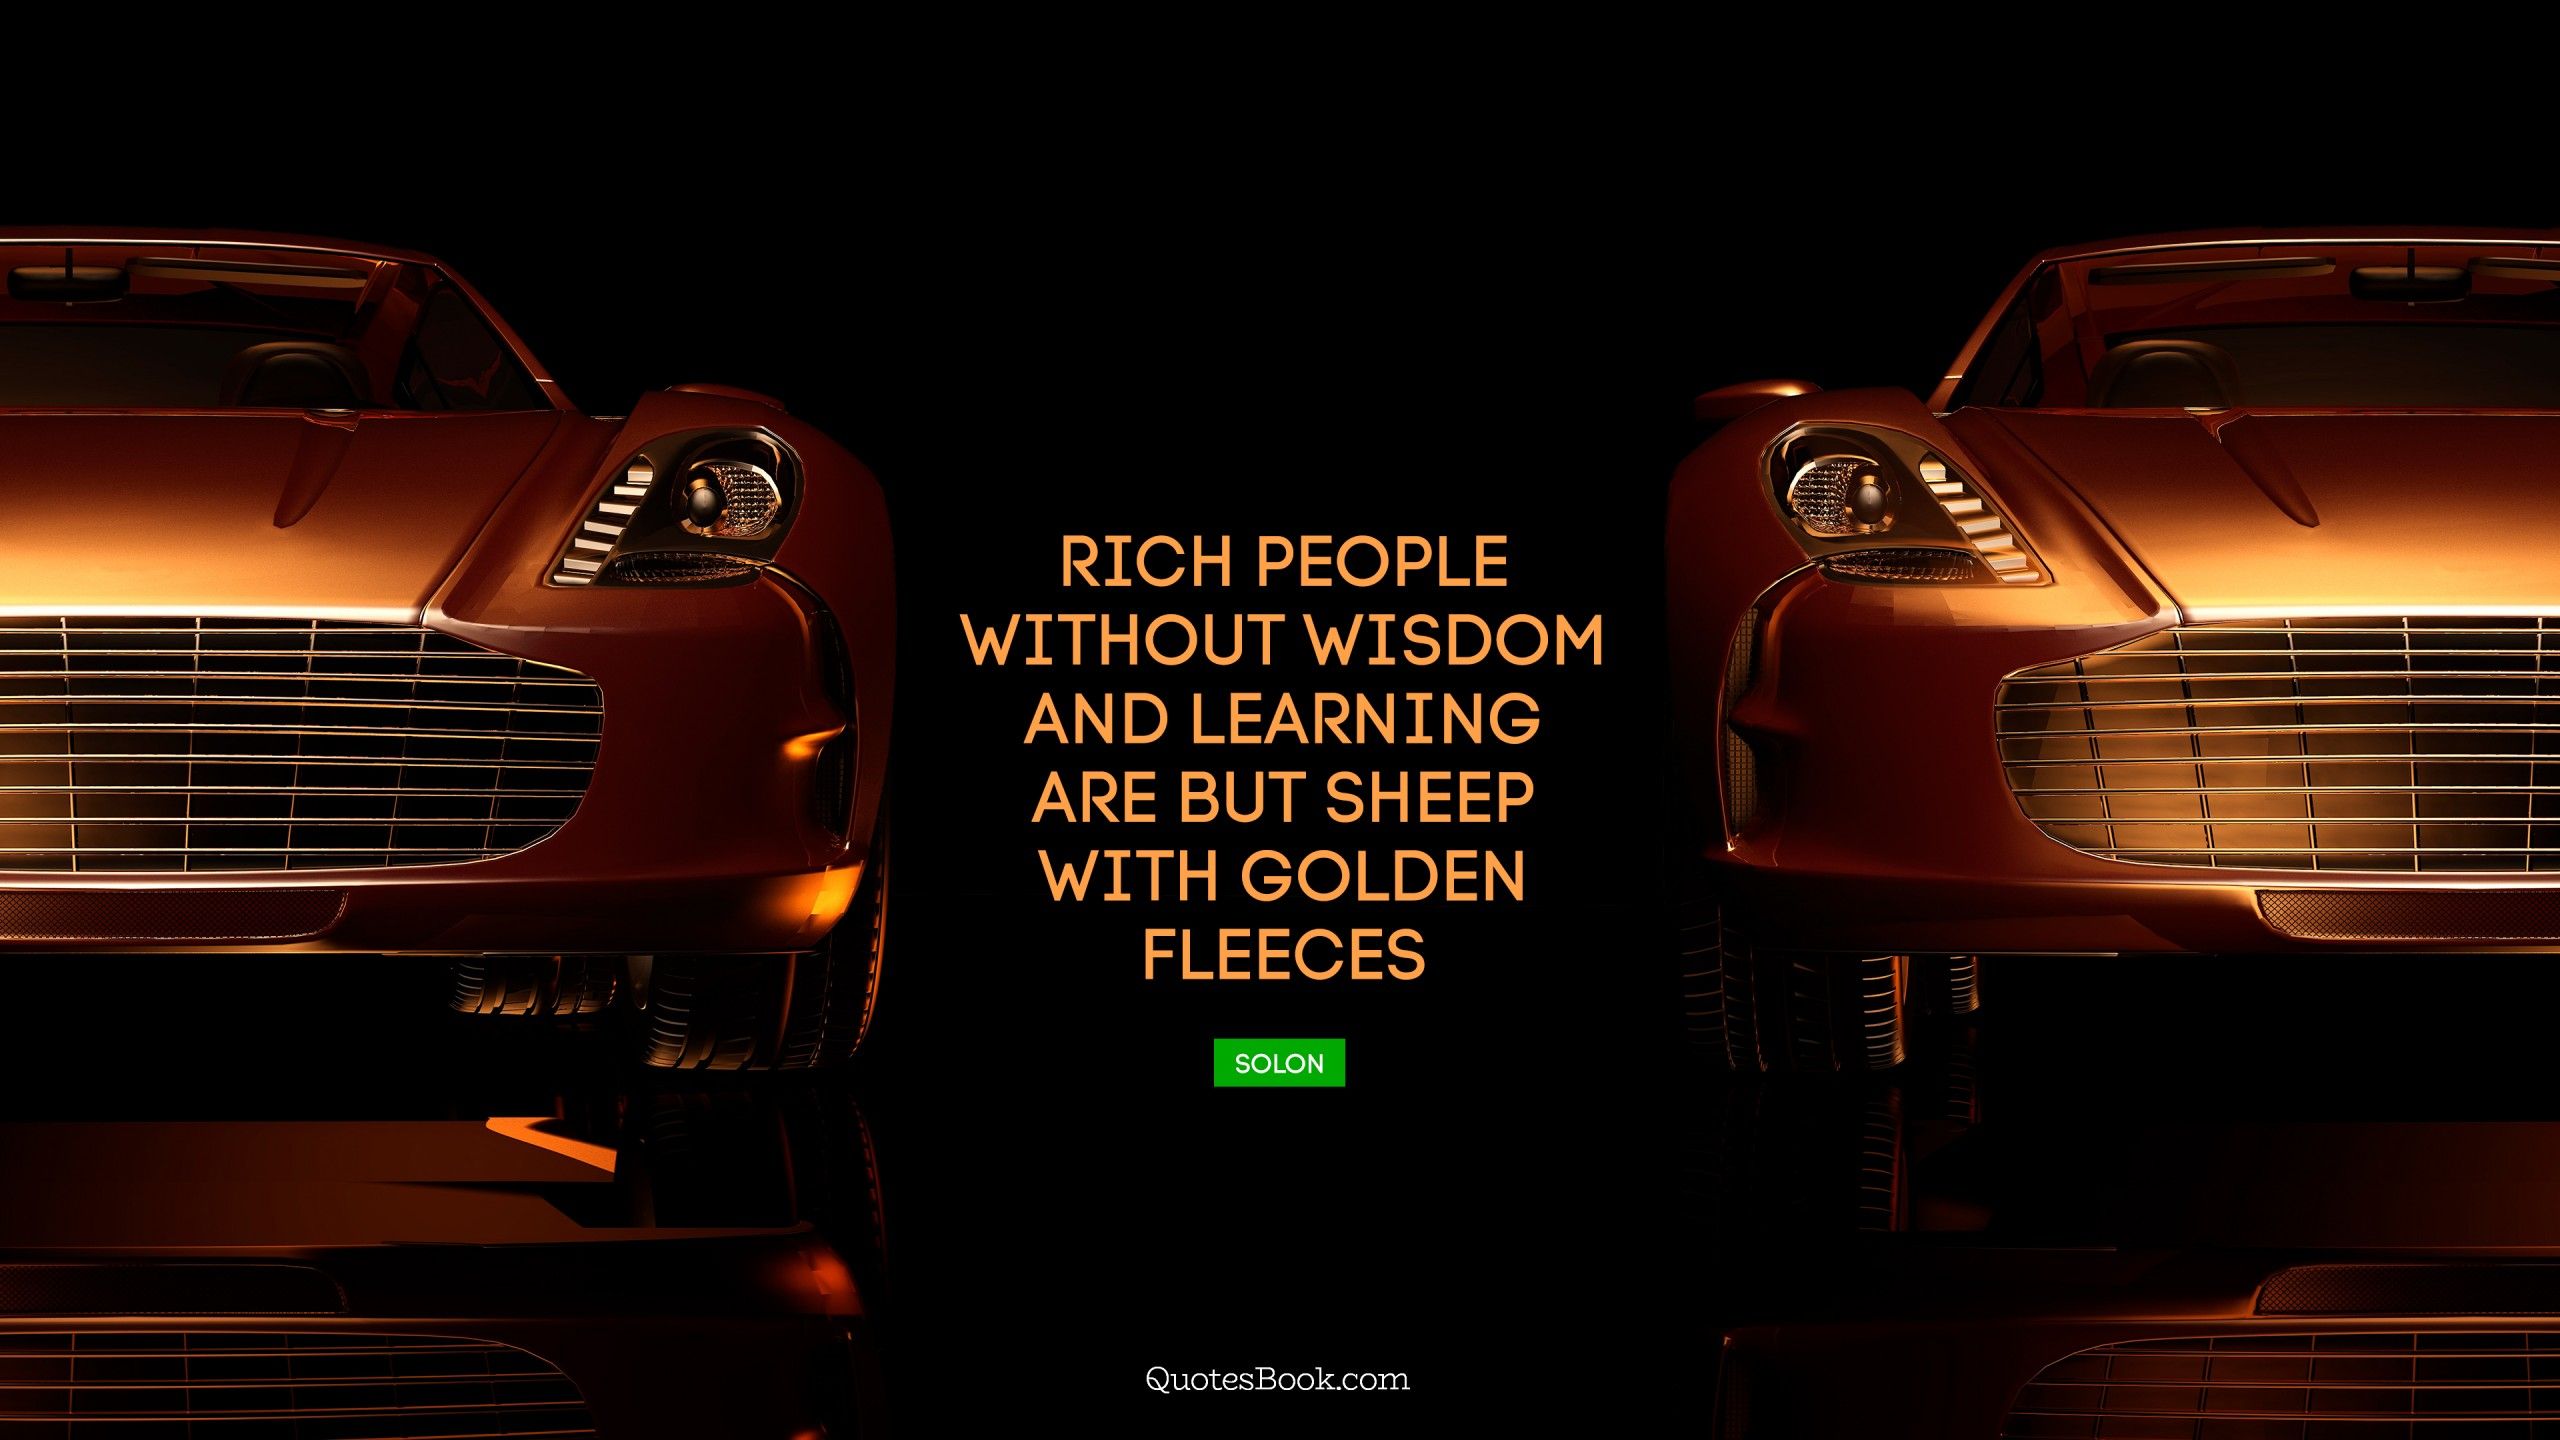 مردم ثروتمند